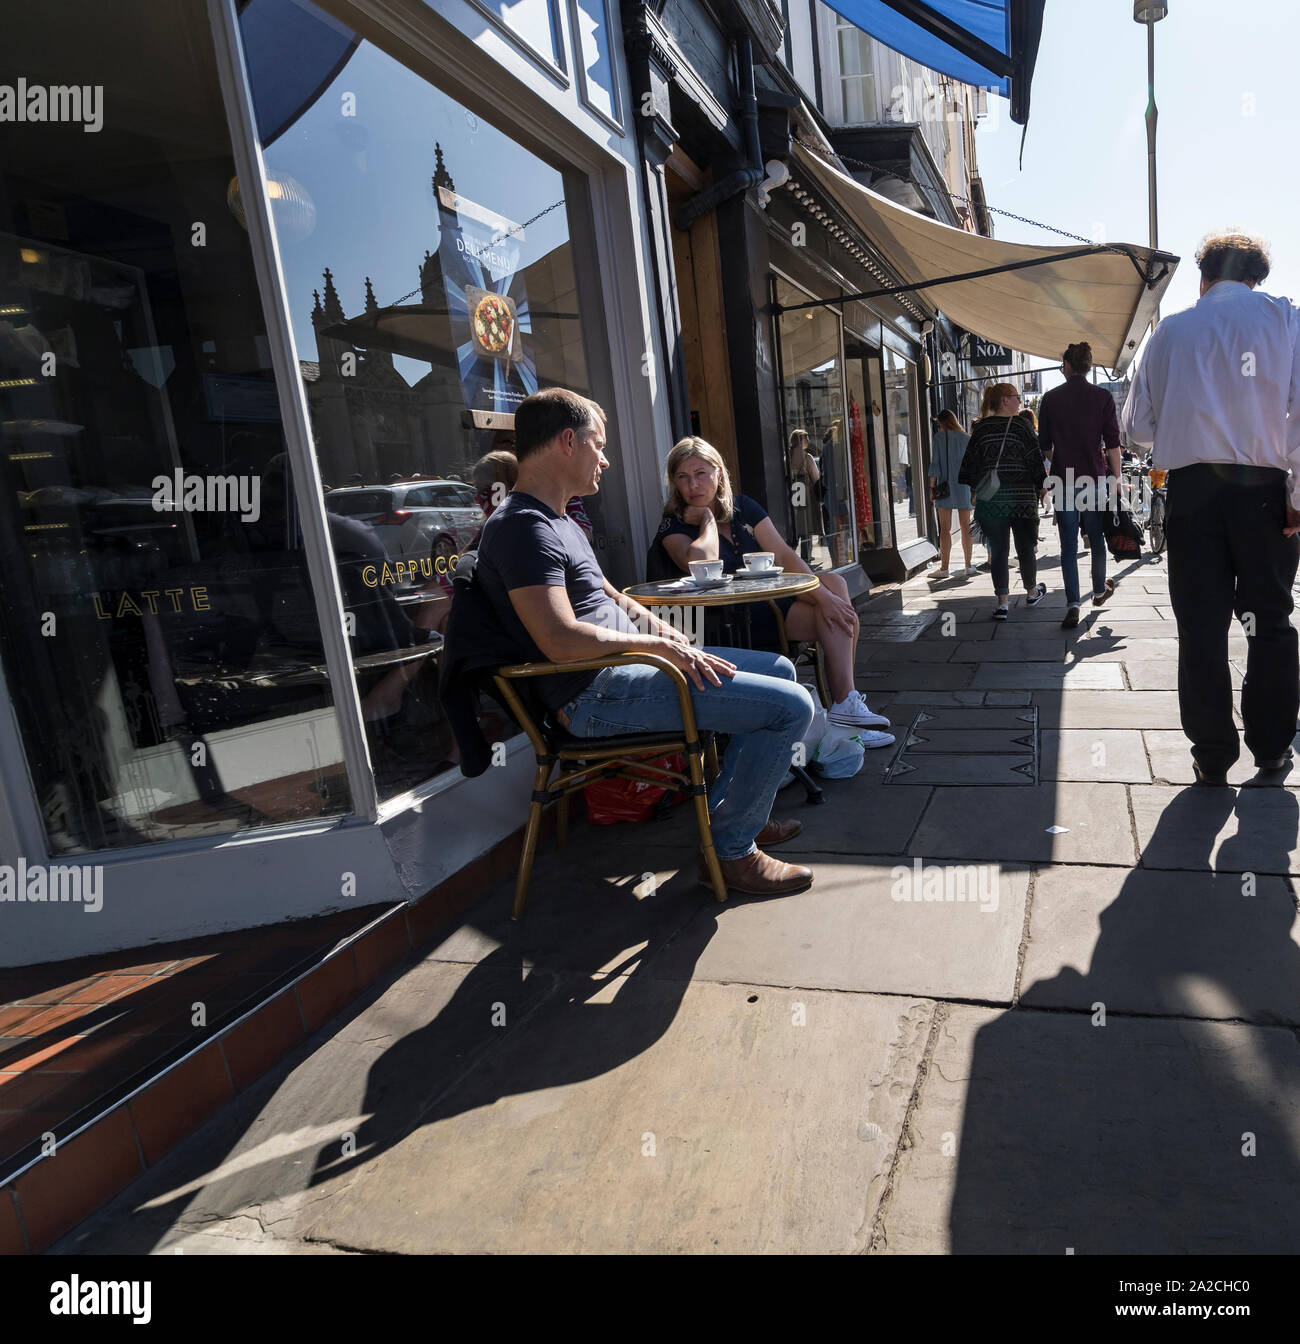 Deux personnes assis à table de la chaussée à parler devant un café Kings parade Cambridge 2019 Banque D'Images